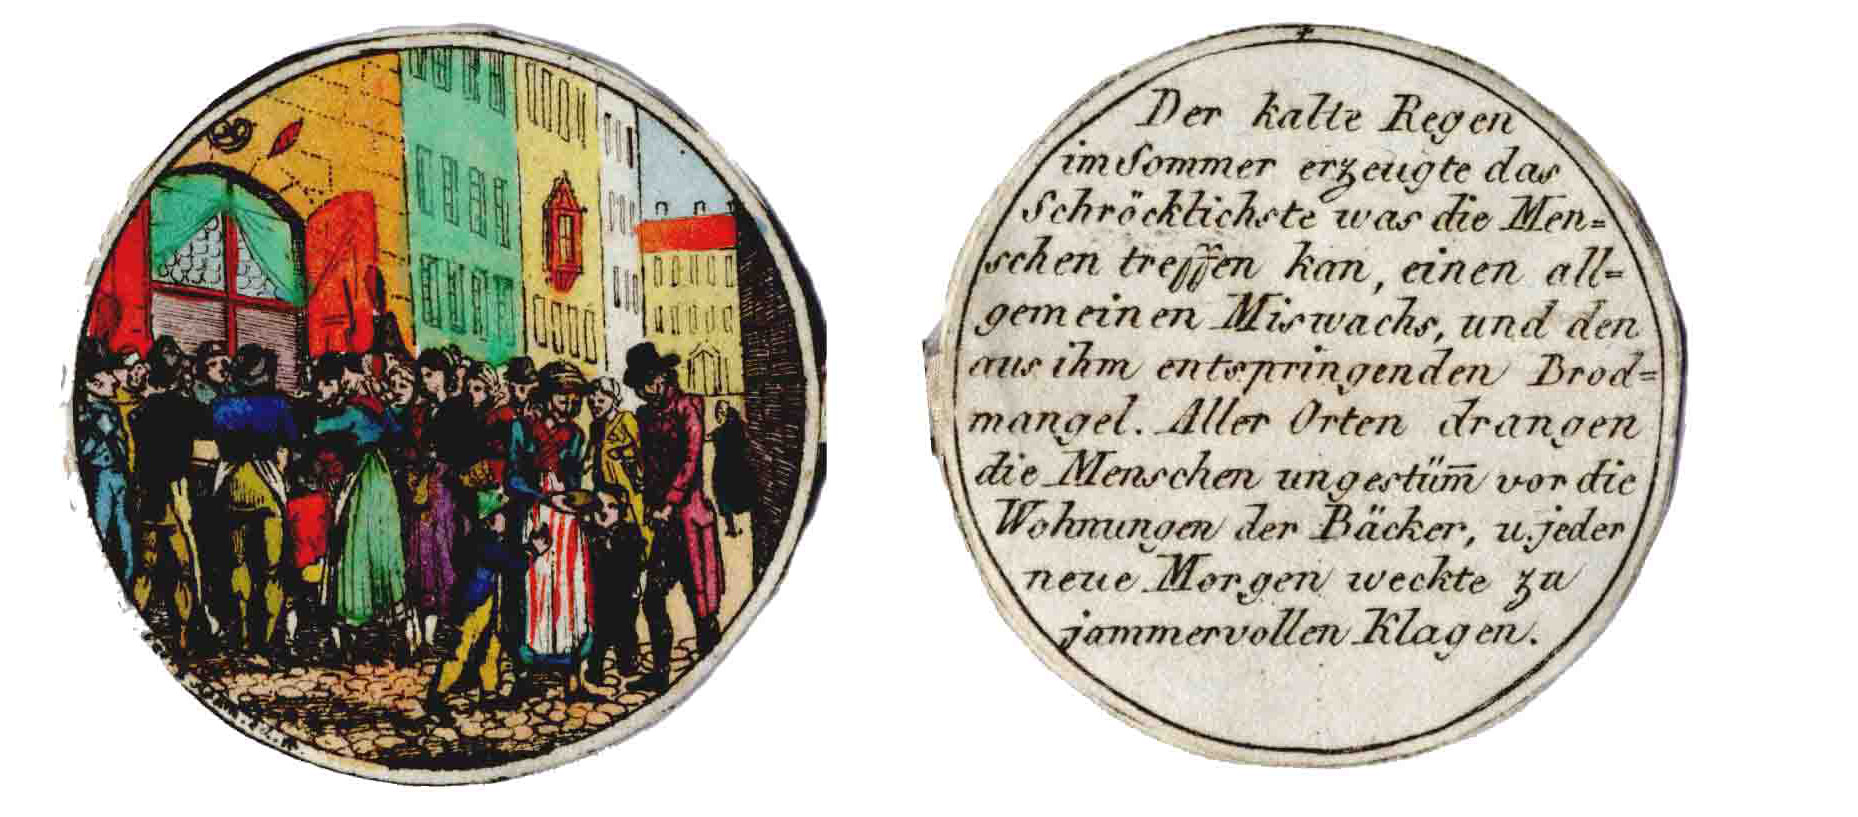 Winningers Wirtshaus Weisheiten vor 1860 – Jahn Regensburg